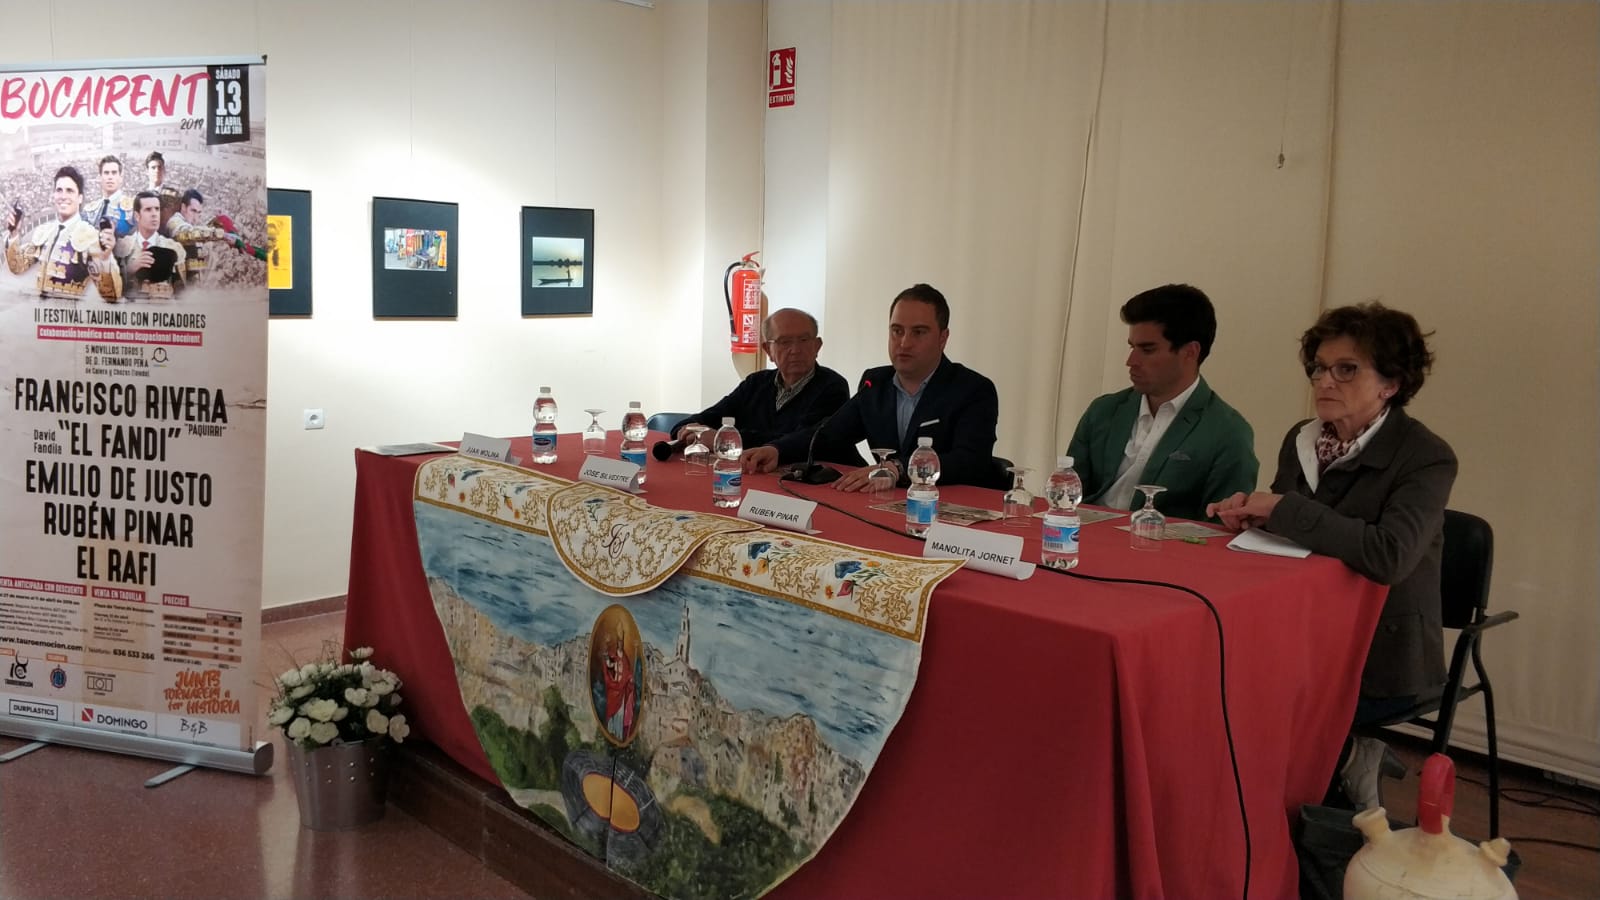 Presentació del festival taurí de Bocairent